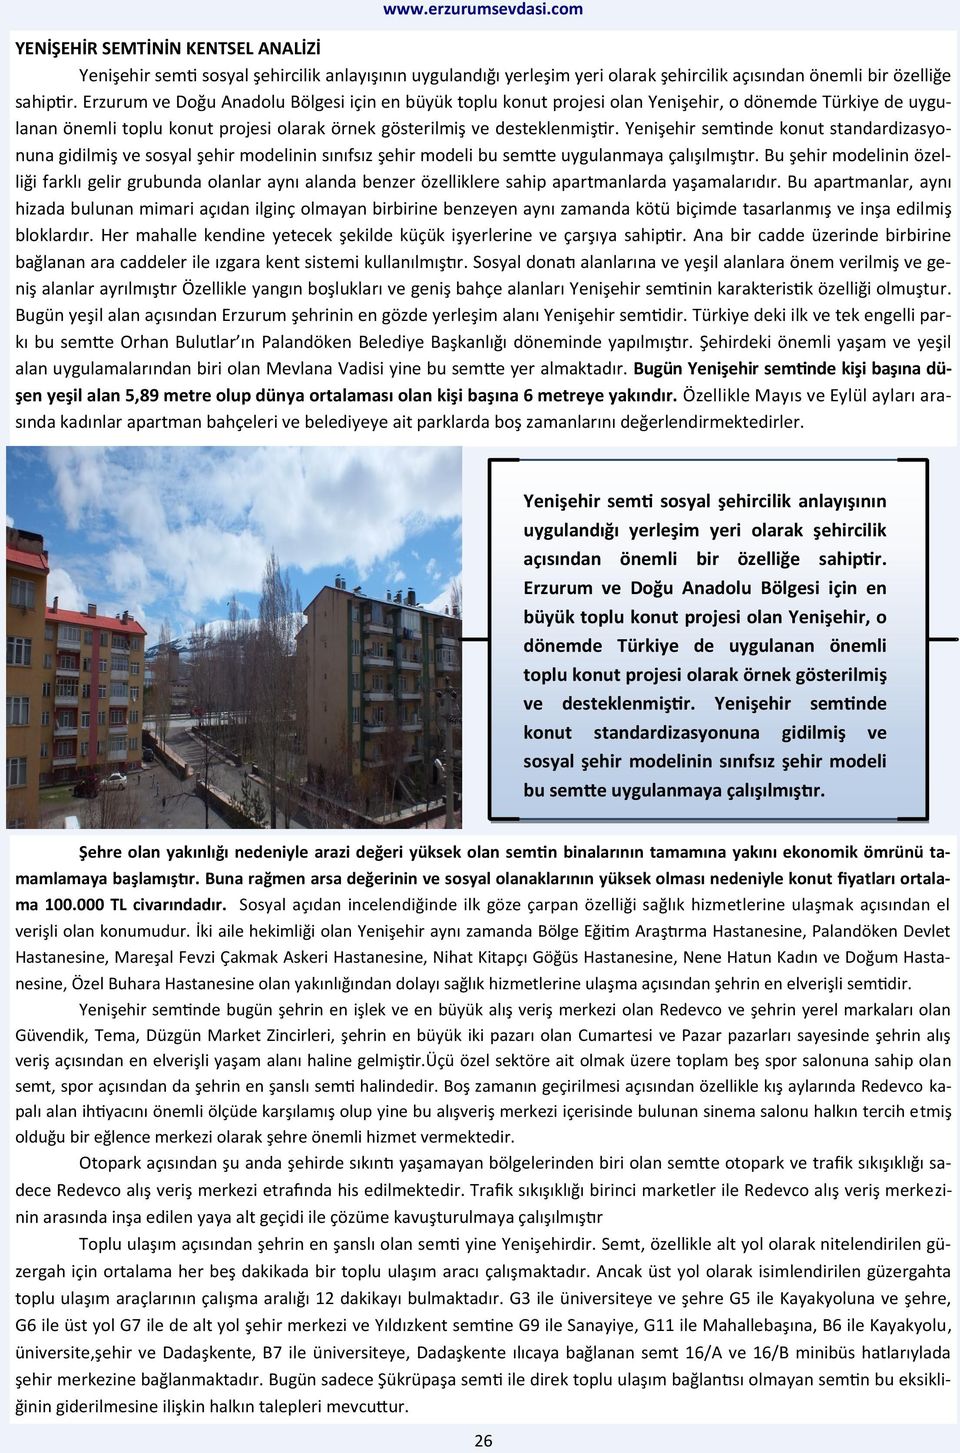 Yenişehir semtinde konut standardizasyonuna gidilmiş ve sosyal şehir modelinin sınıfsız şehir modeli bu semtte uygulanmaya çalışılmıştır.